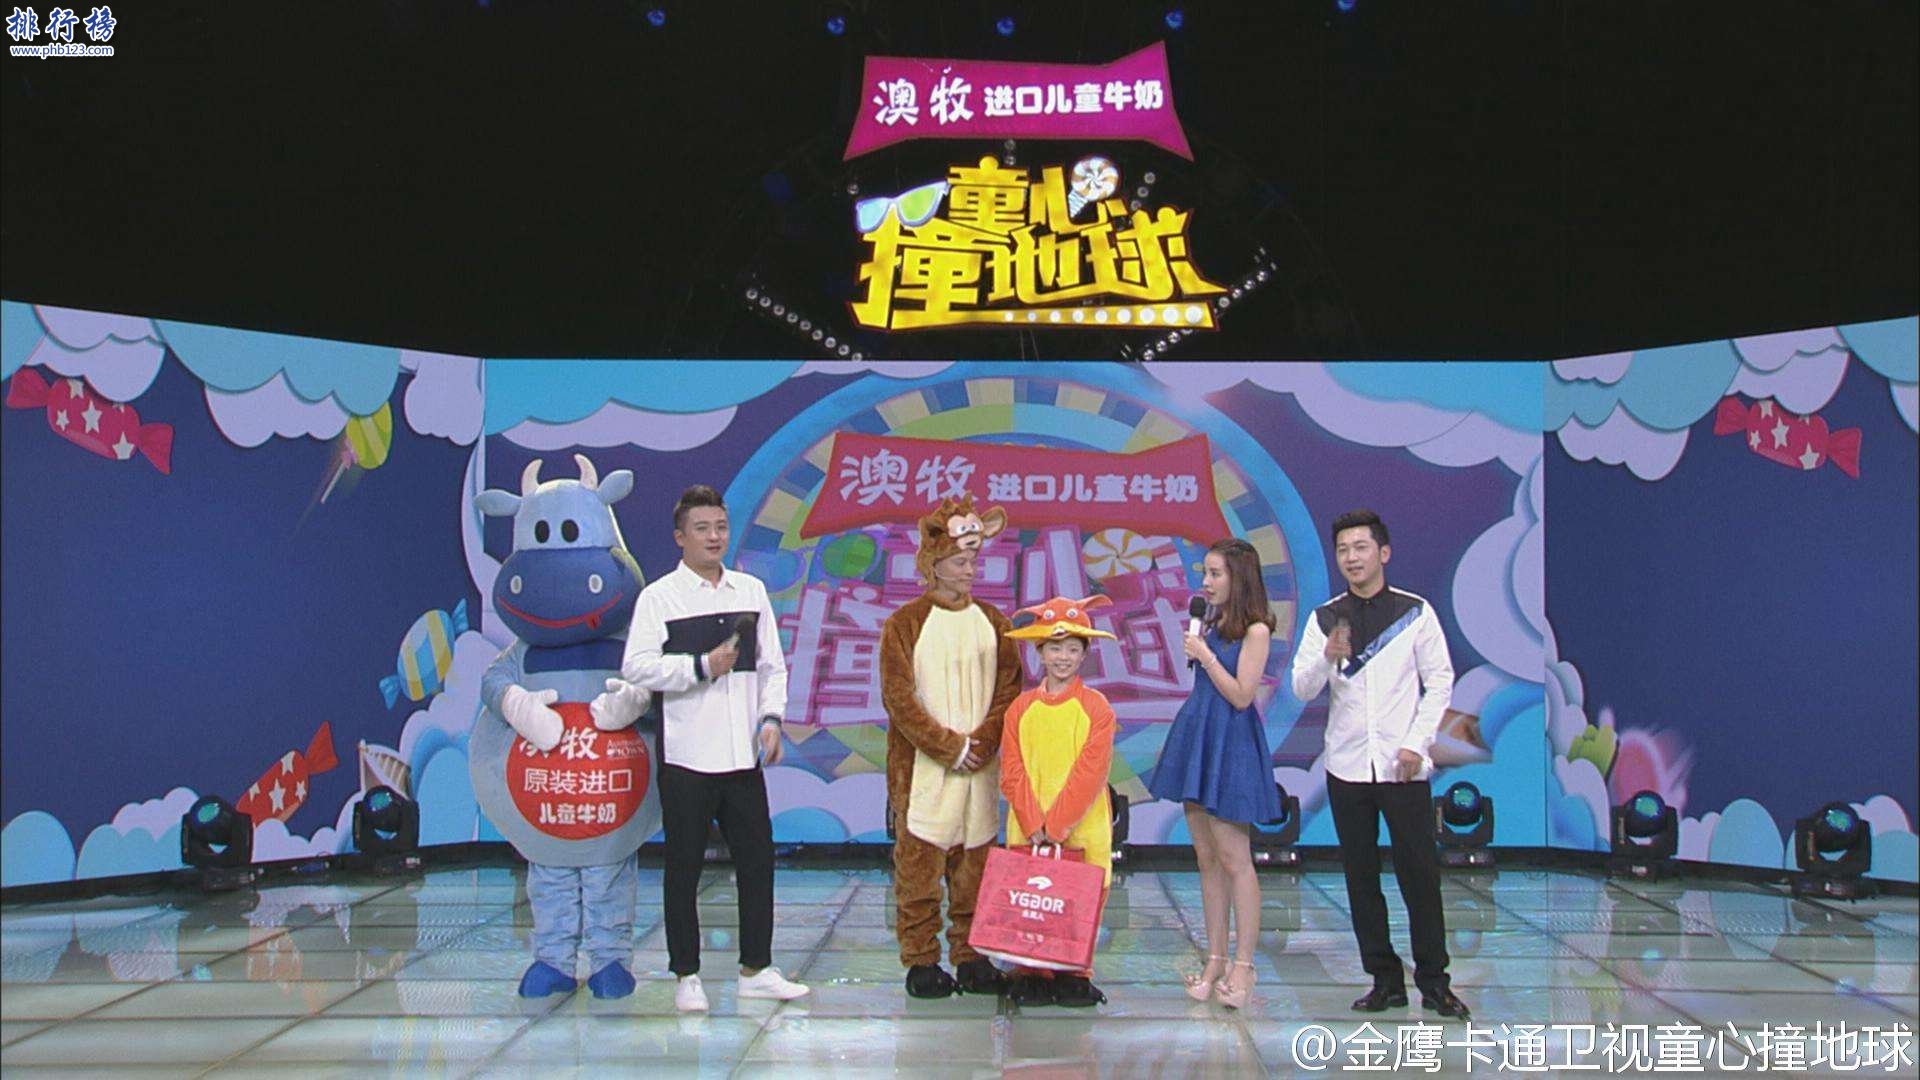 2017年8月18日電視台收視率排行榜,湖南衛視收視第一金鷹卡通收視新高